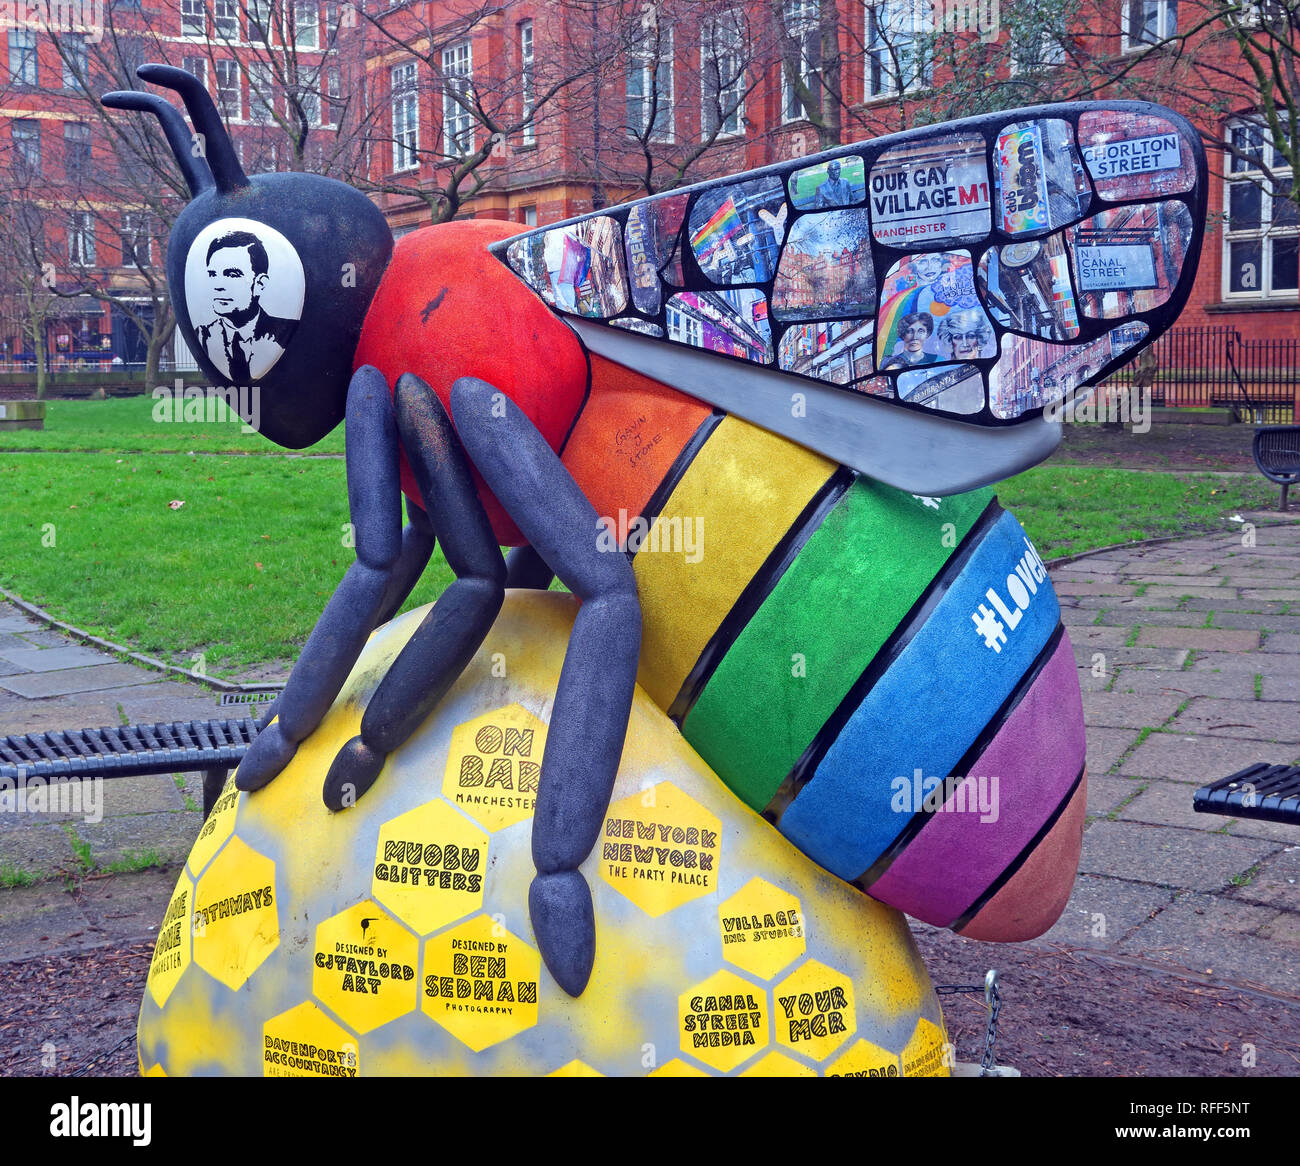 Bee in der Stadt - Sackville Gärten mit Alan Turing, Gay Village, Canal St, Manchester, Lancashire, England, Großbritannien Stockfoto